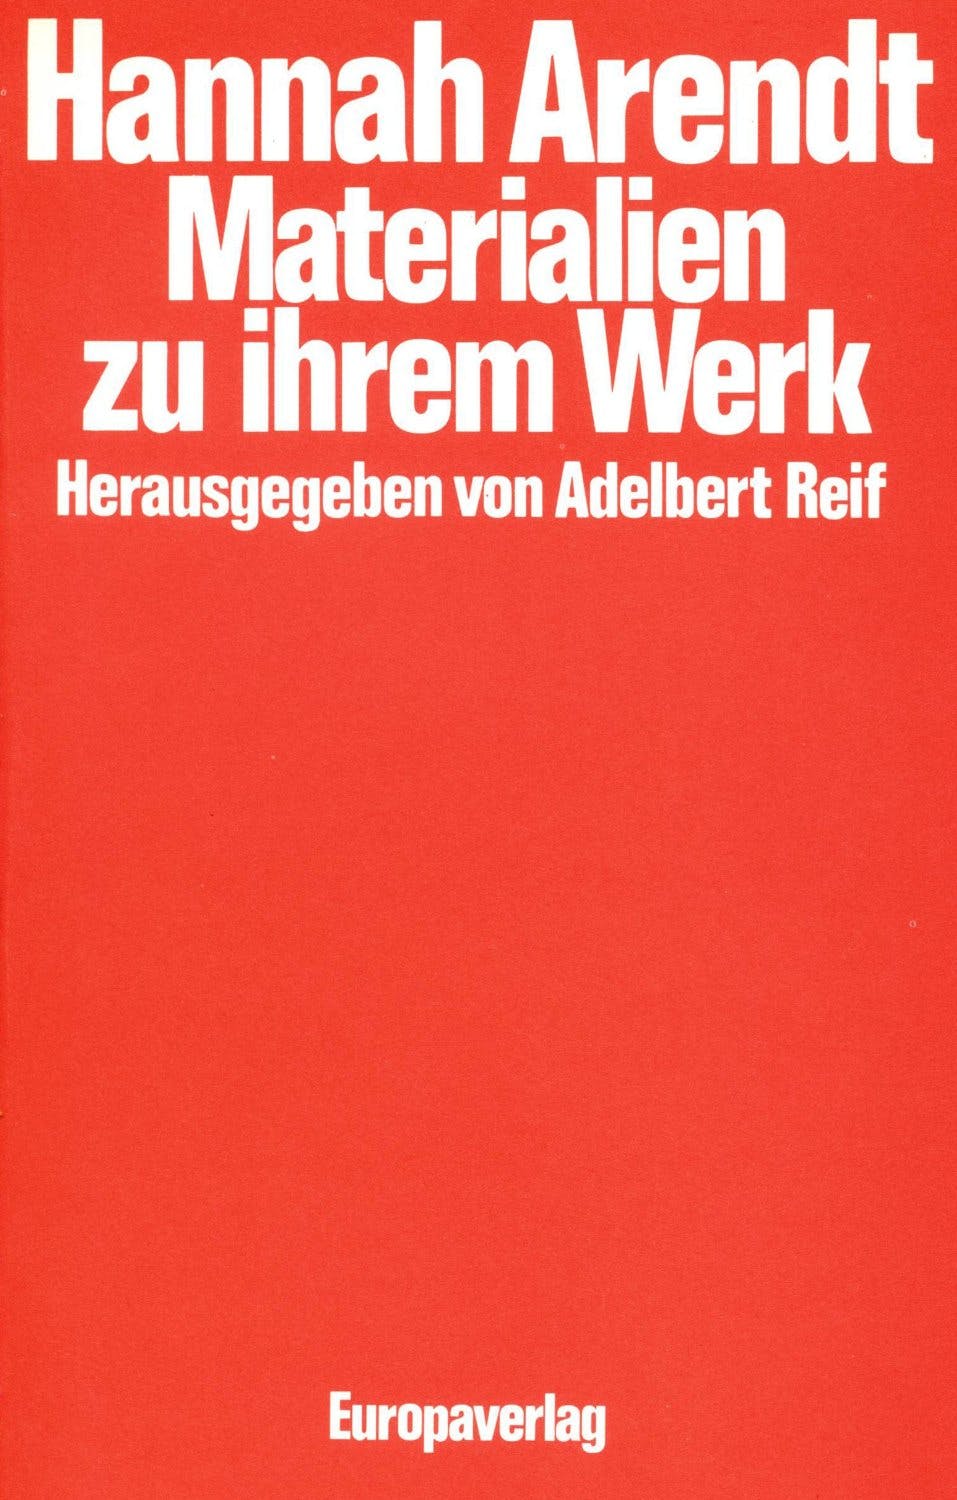 موادی درباره کار هانا آرنت، کتابی به همت آدلبرت رایف، که این مصاحبه را انجام داده است